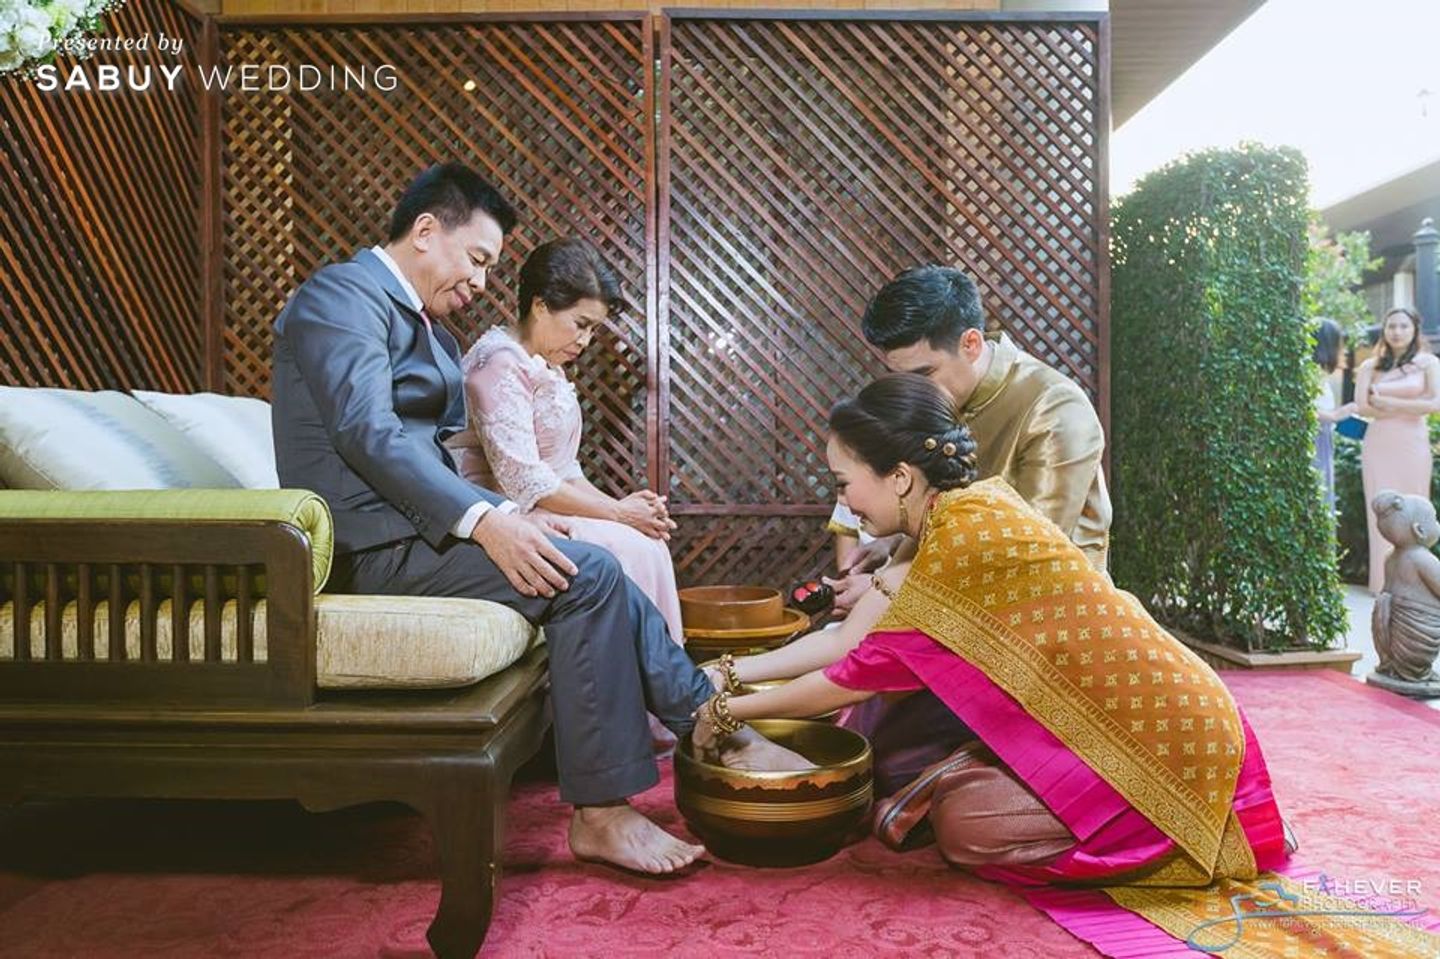 พิธีแต่งงานแบบไทย,บ่าวสาว,ชุดไทย,ครอบครัวบ่าวสาว,งานหมั้น,พิธีหมั้น,ขอขมาคุณพ่อคุณแม่ รีวิวงานแต่งแบบไทย ใช้พิธีการครบสูตร @Phothalai leisure park